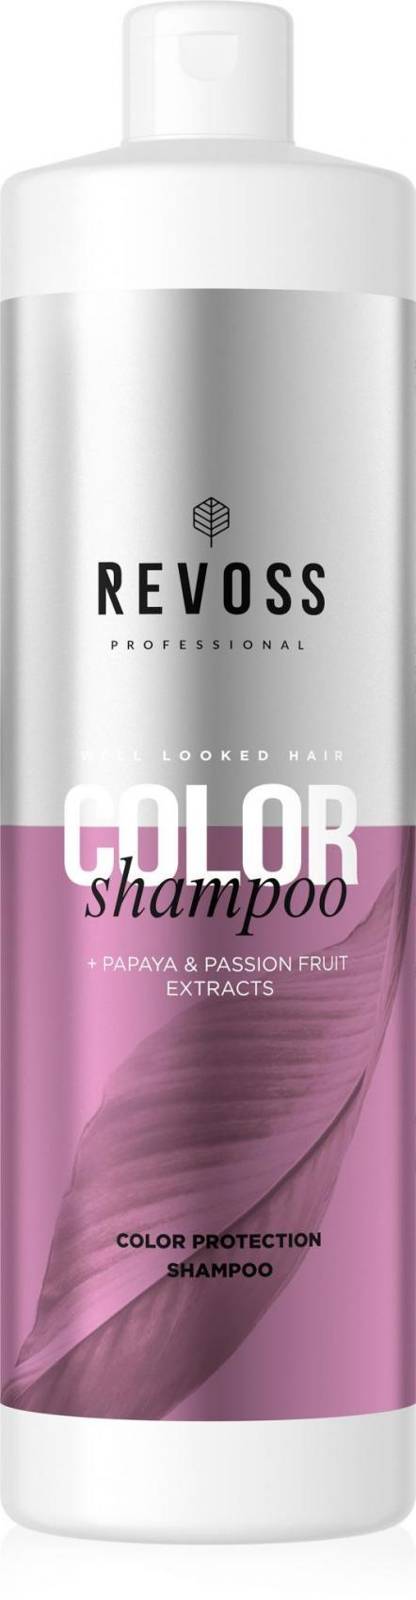 profesjonalny szampon do włosów farbowanych opinie